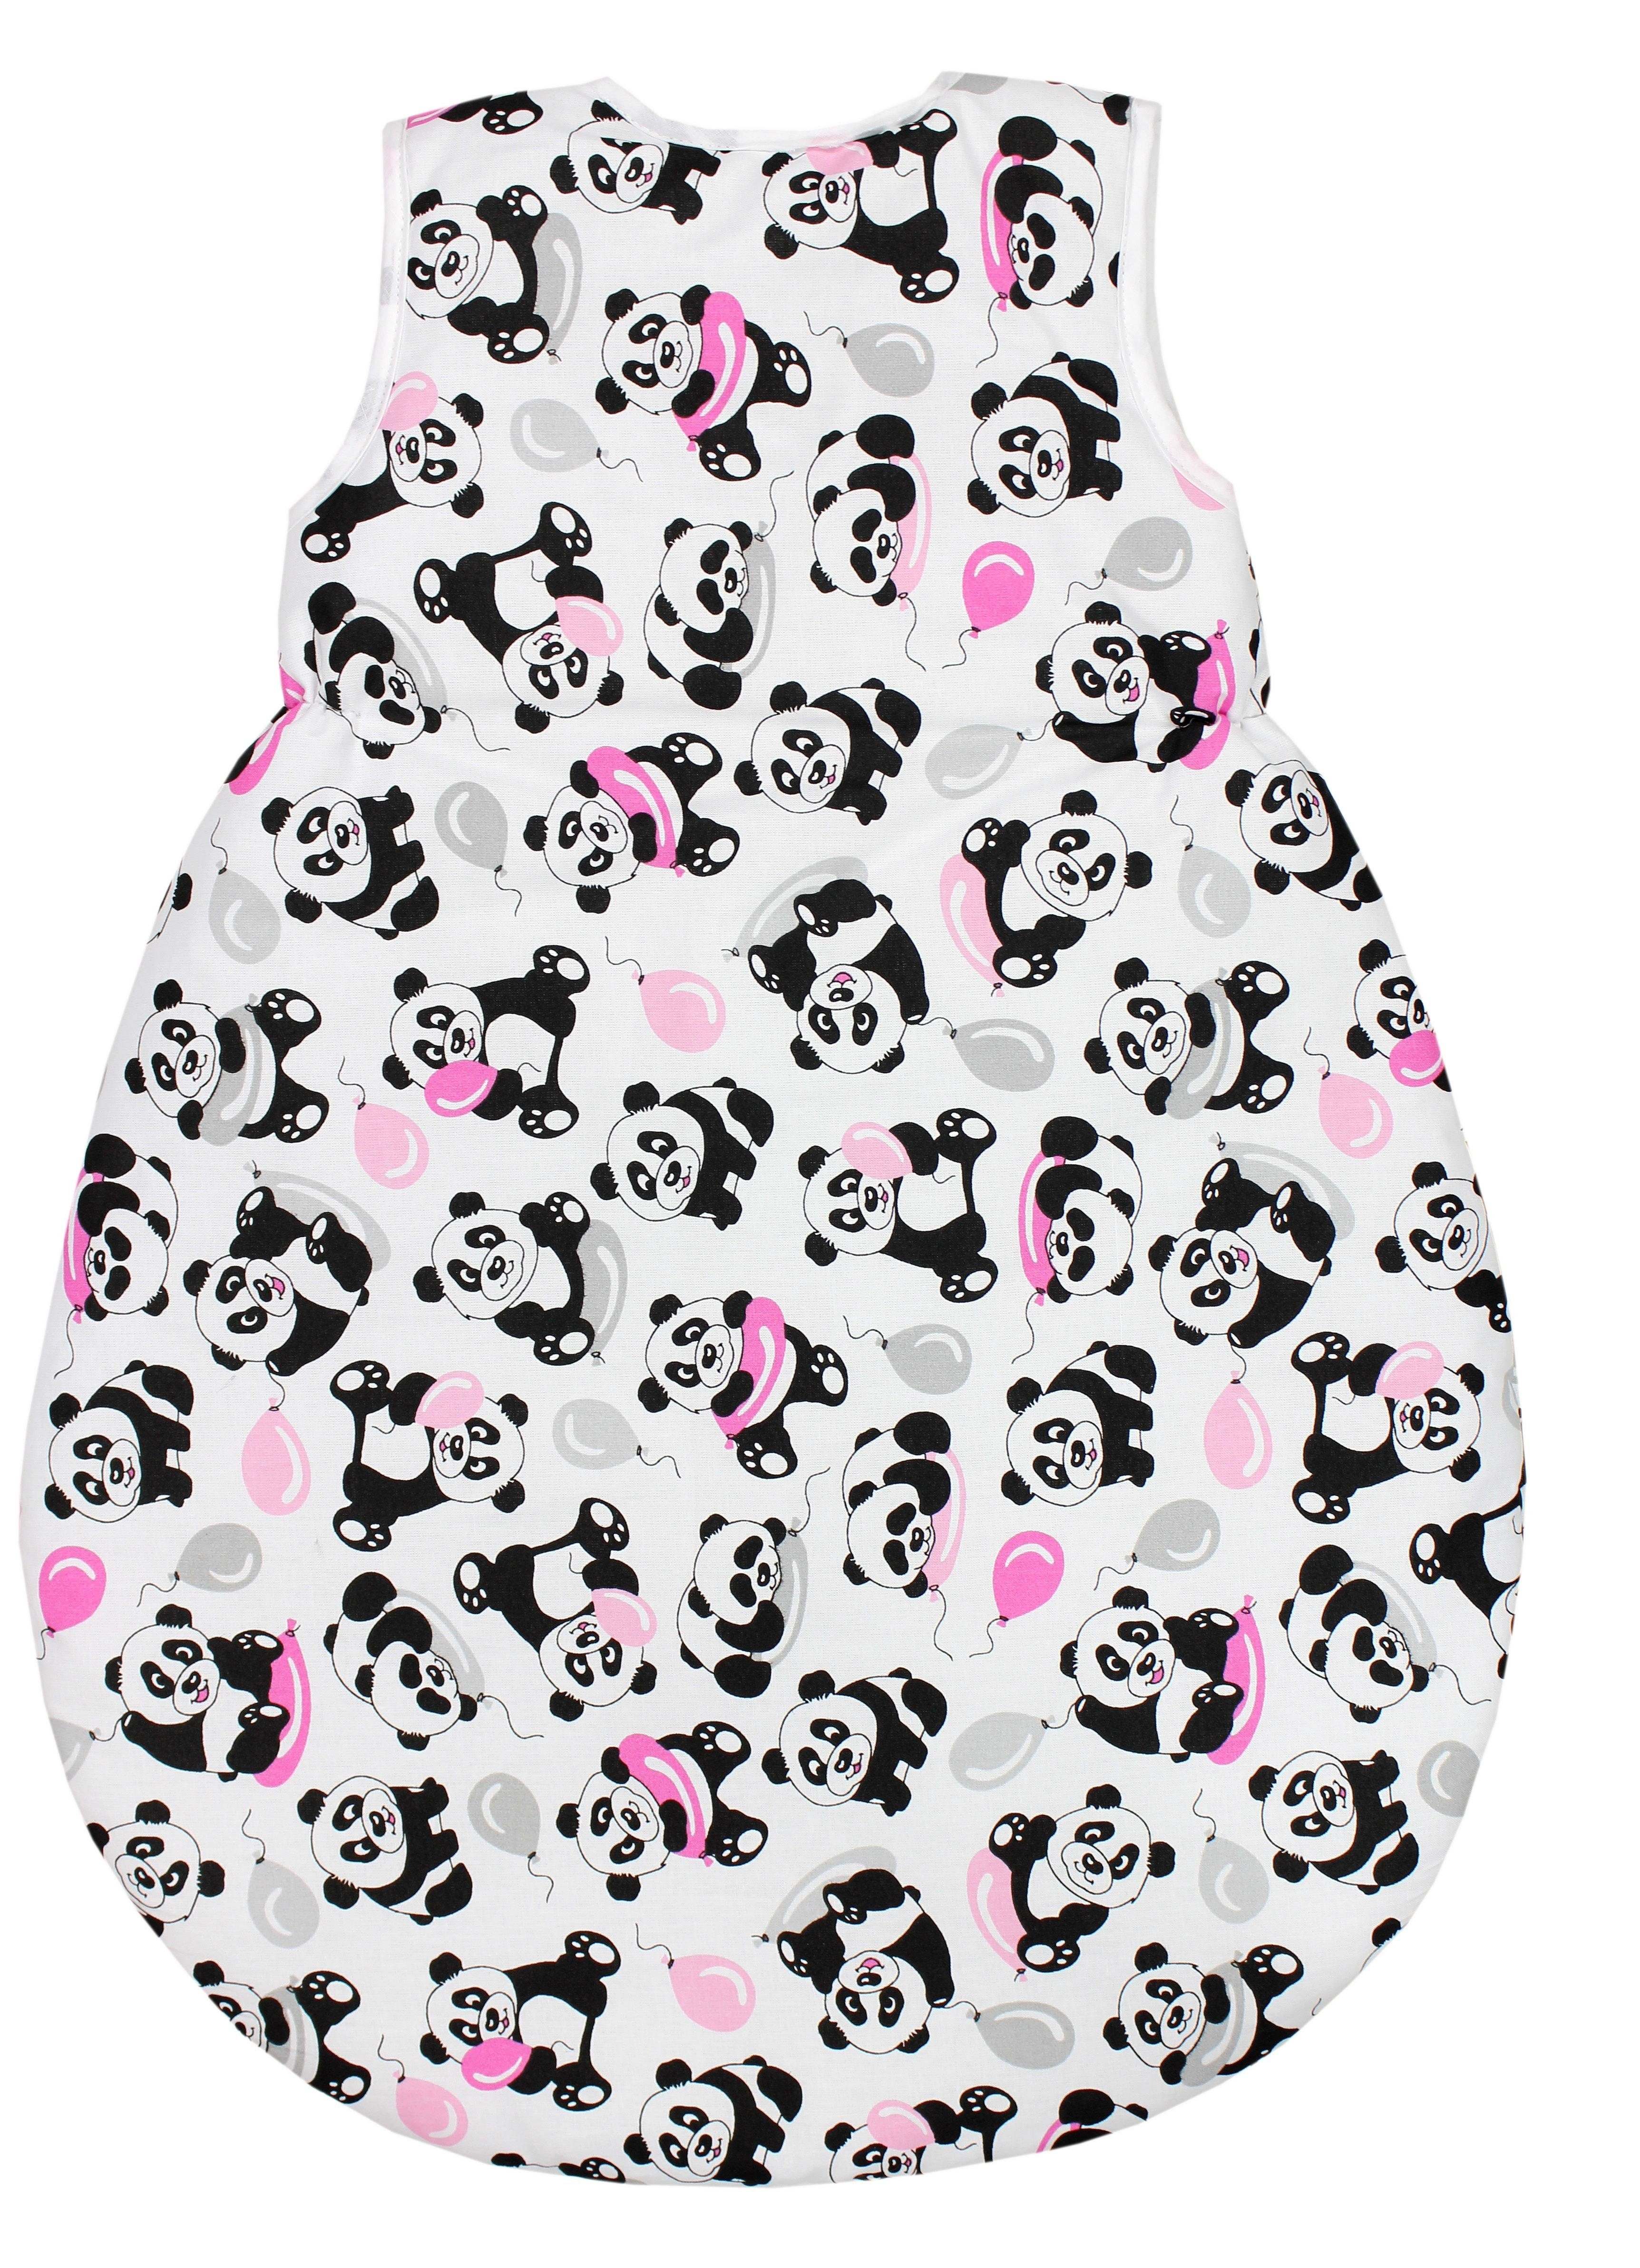 Ärmel mit TupTam Unisex Rosa Schlafsack Babyschlafsack Wattiert Panda / Baby ohne Ballons TupTam